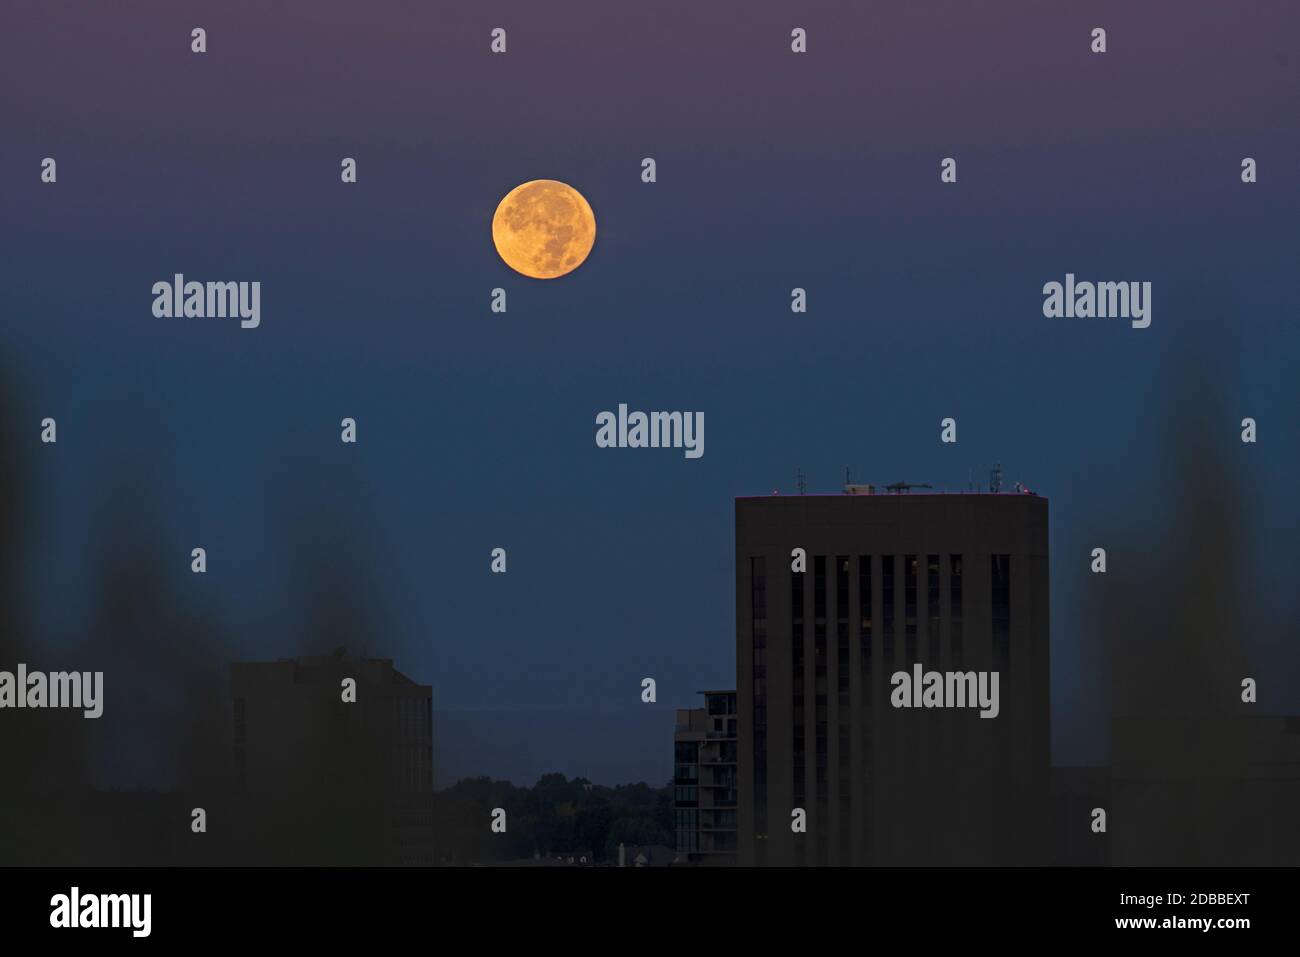 USA, Idaho, Boise, Full moon over city Stock Photo